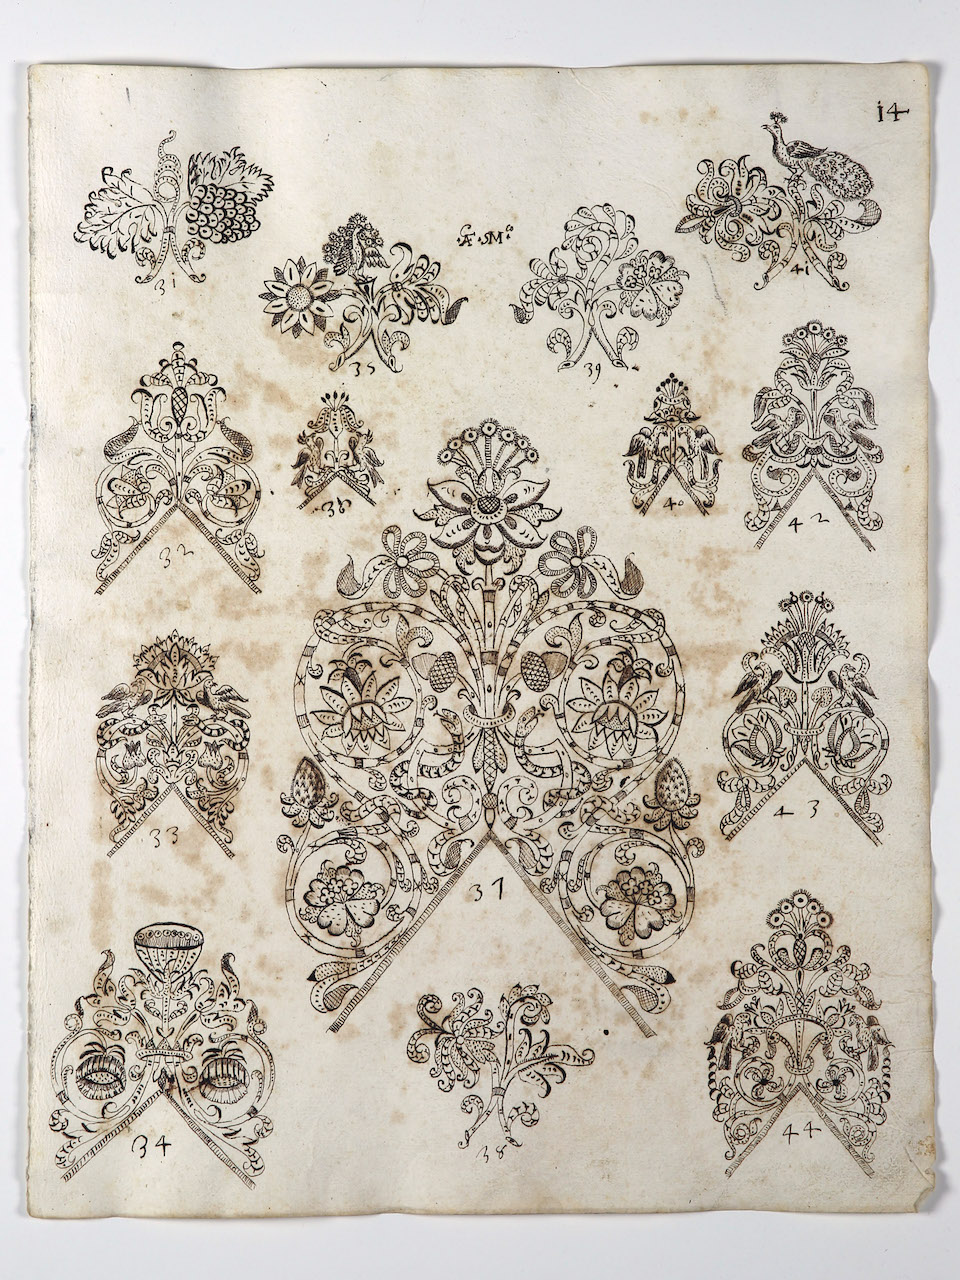 modelli per merletti (disegno) di Samarco Giovanni Alfonso (sec. XVII)